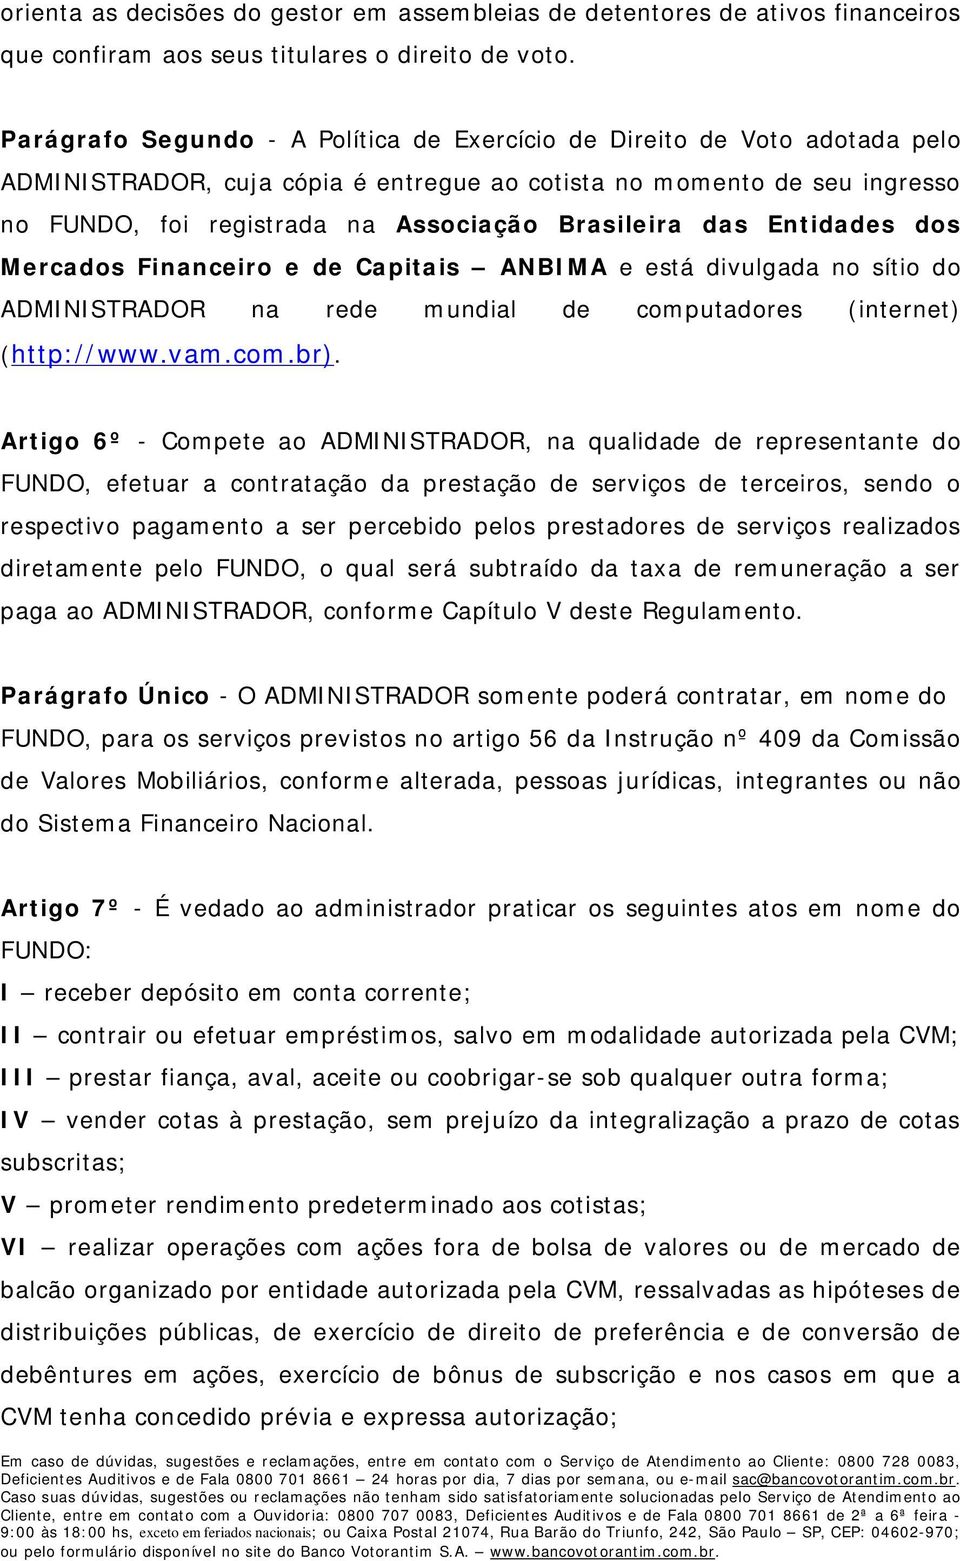 Brasileira das Entidades dos Mercados Financeiro e de Capitais ANBIMA e está divulgada no sítio do ADMINISTRADOR na rede mundial de computadores (internet) (http://www.vam.com.br).